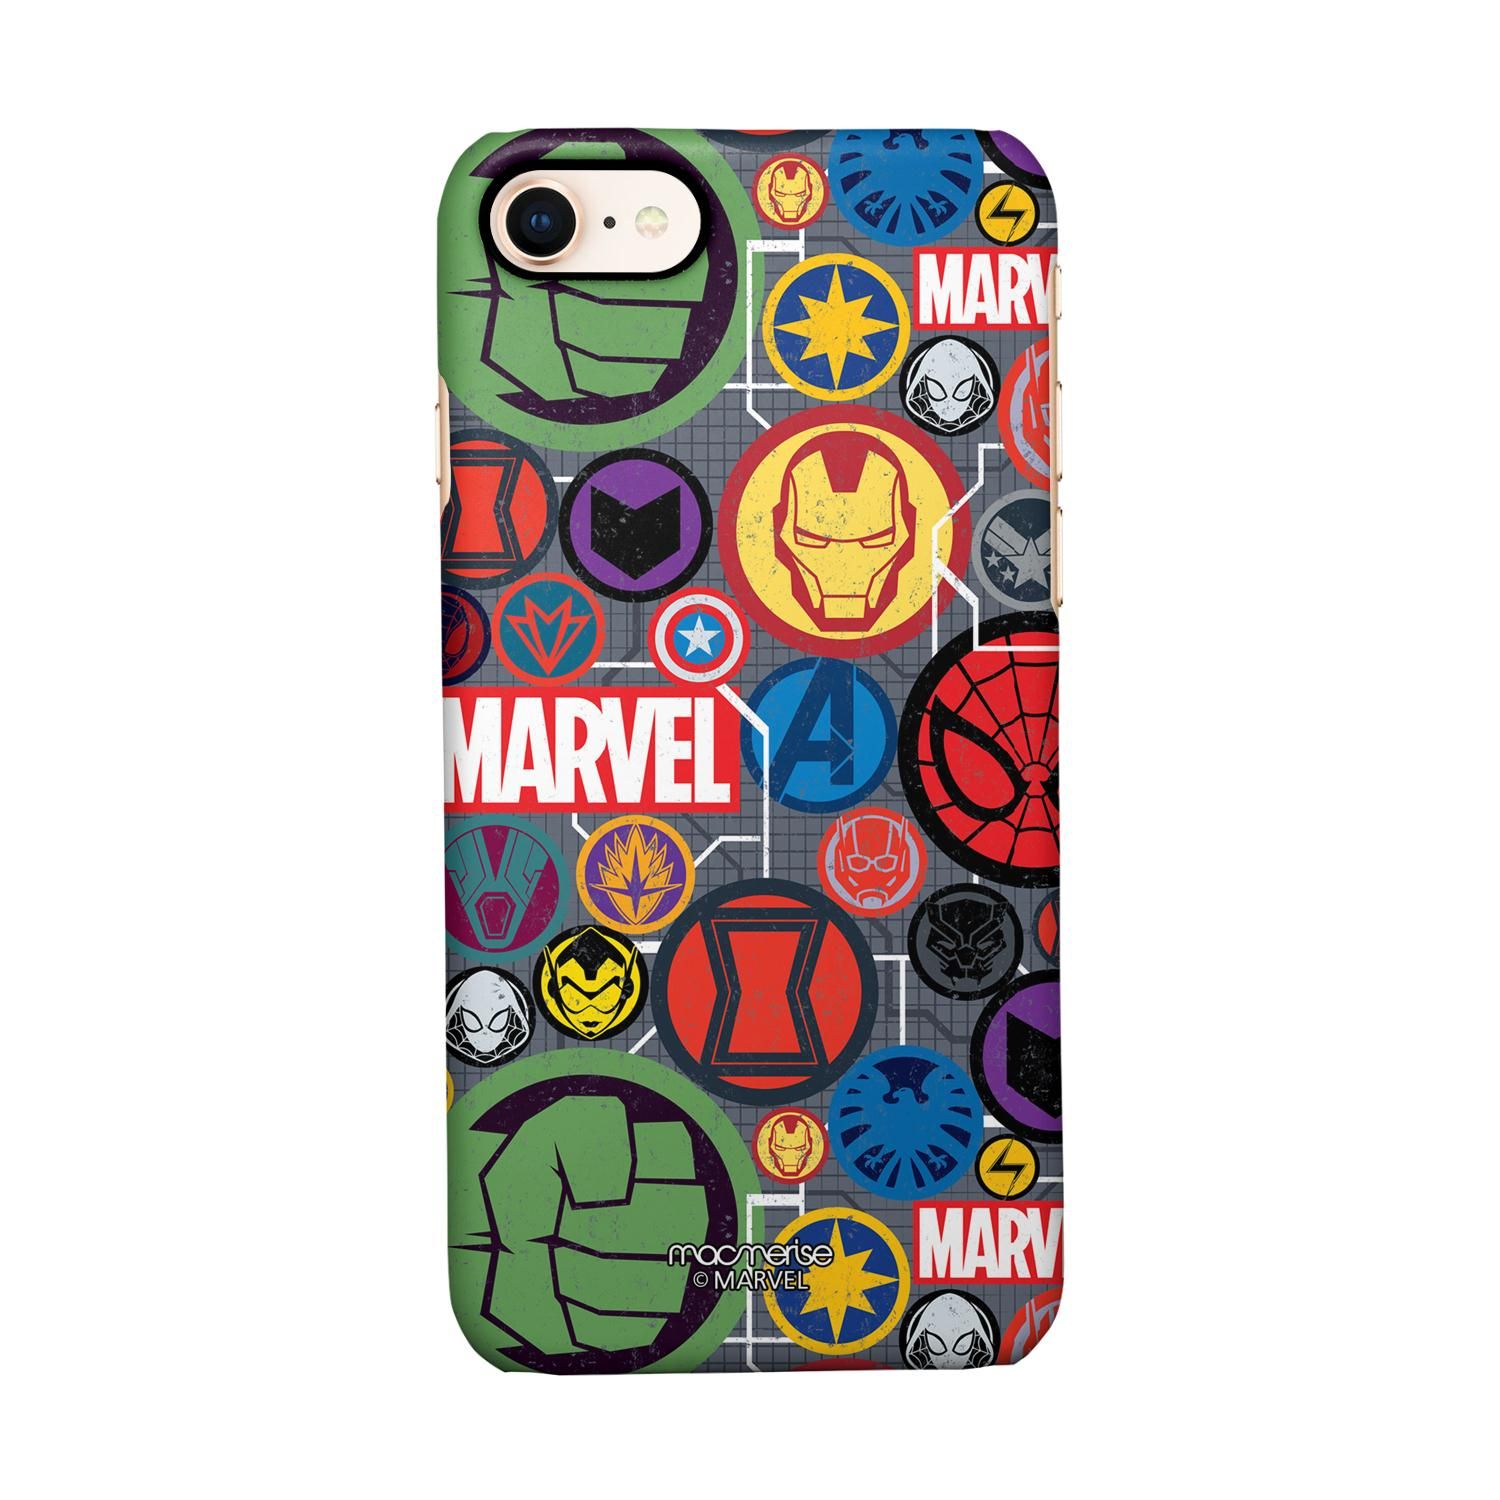 Buy Marvel Iconic Mashup - Sleek Phone Case for iPhone 7 Online